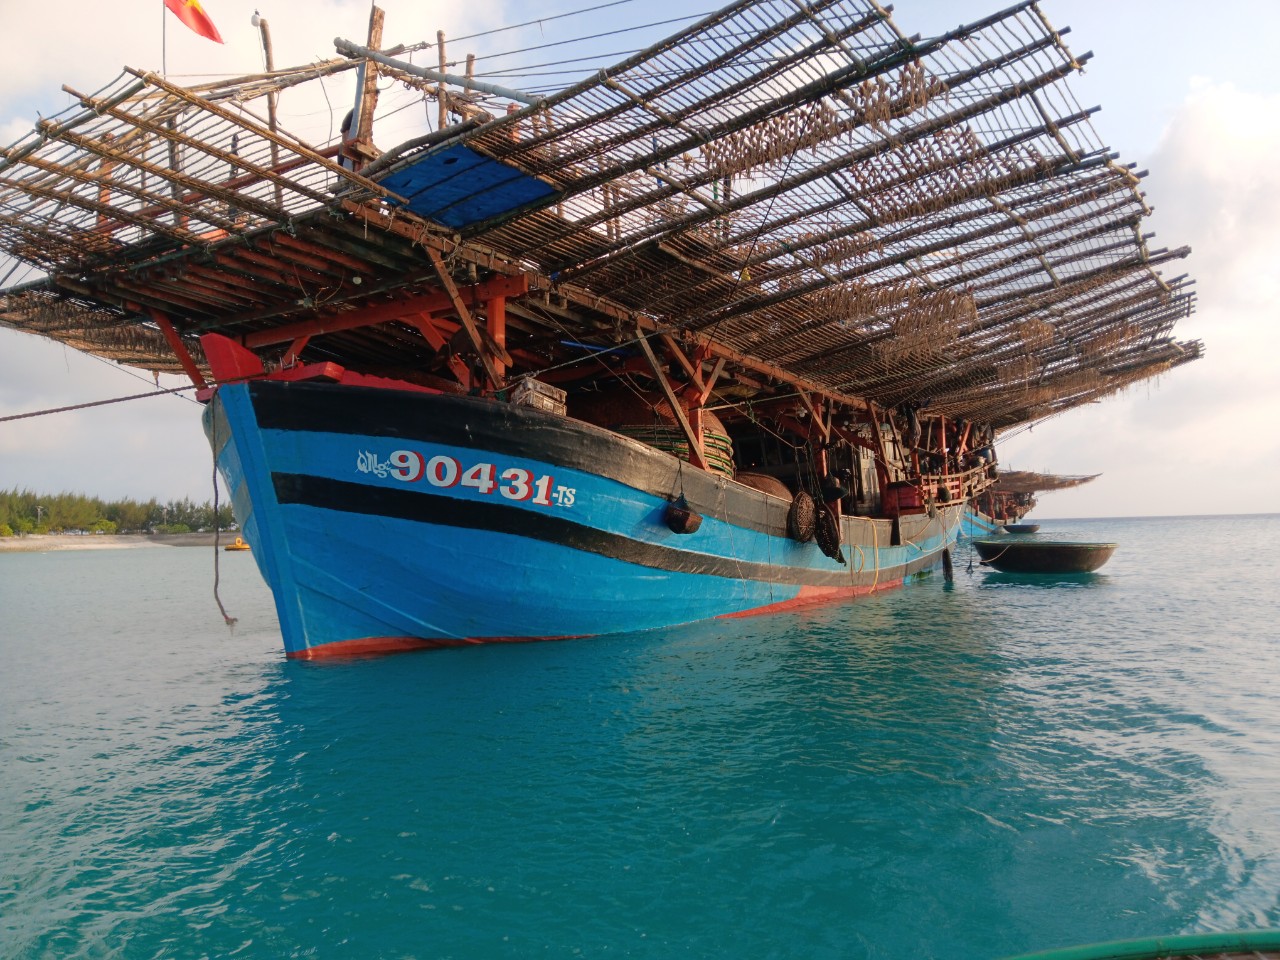 Trung tâm Dịch vụ Hậu cần kỹ thuật đảo Sinh Tồn sửa chữa tàu cá Quảng Ngãi bị hỏng máy trên biển- Ảnh 2.